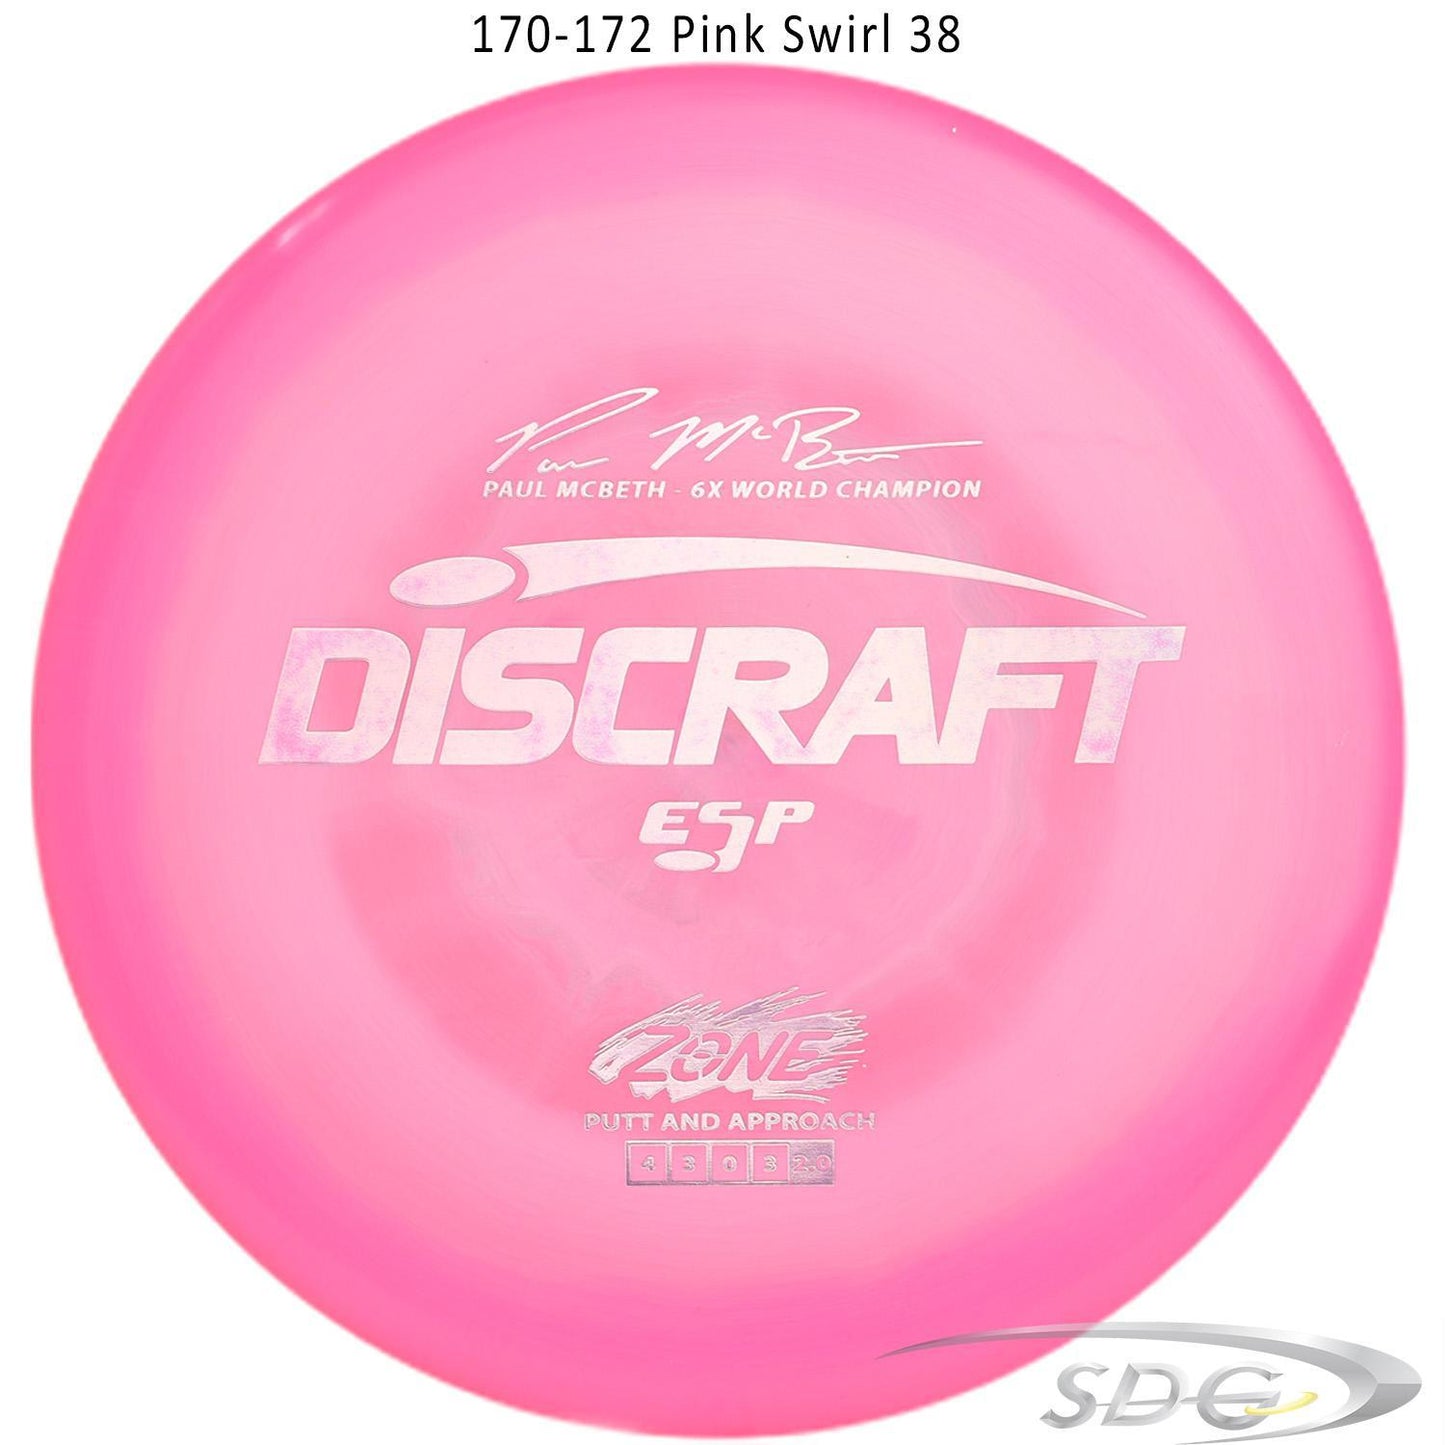 discraft-esp-zone-6x-paul-mcbeth-signature-series-disc-golf-putter 170-172 Pink Swirl 38